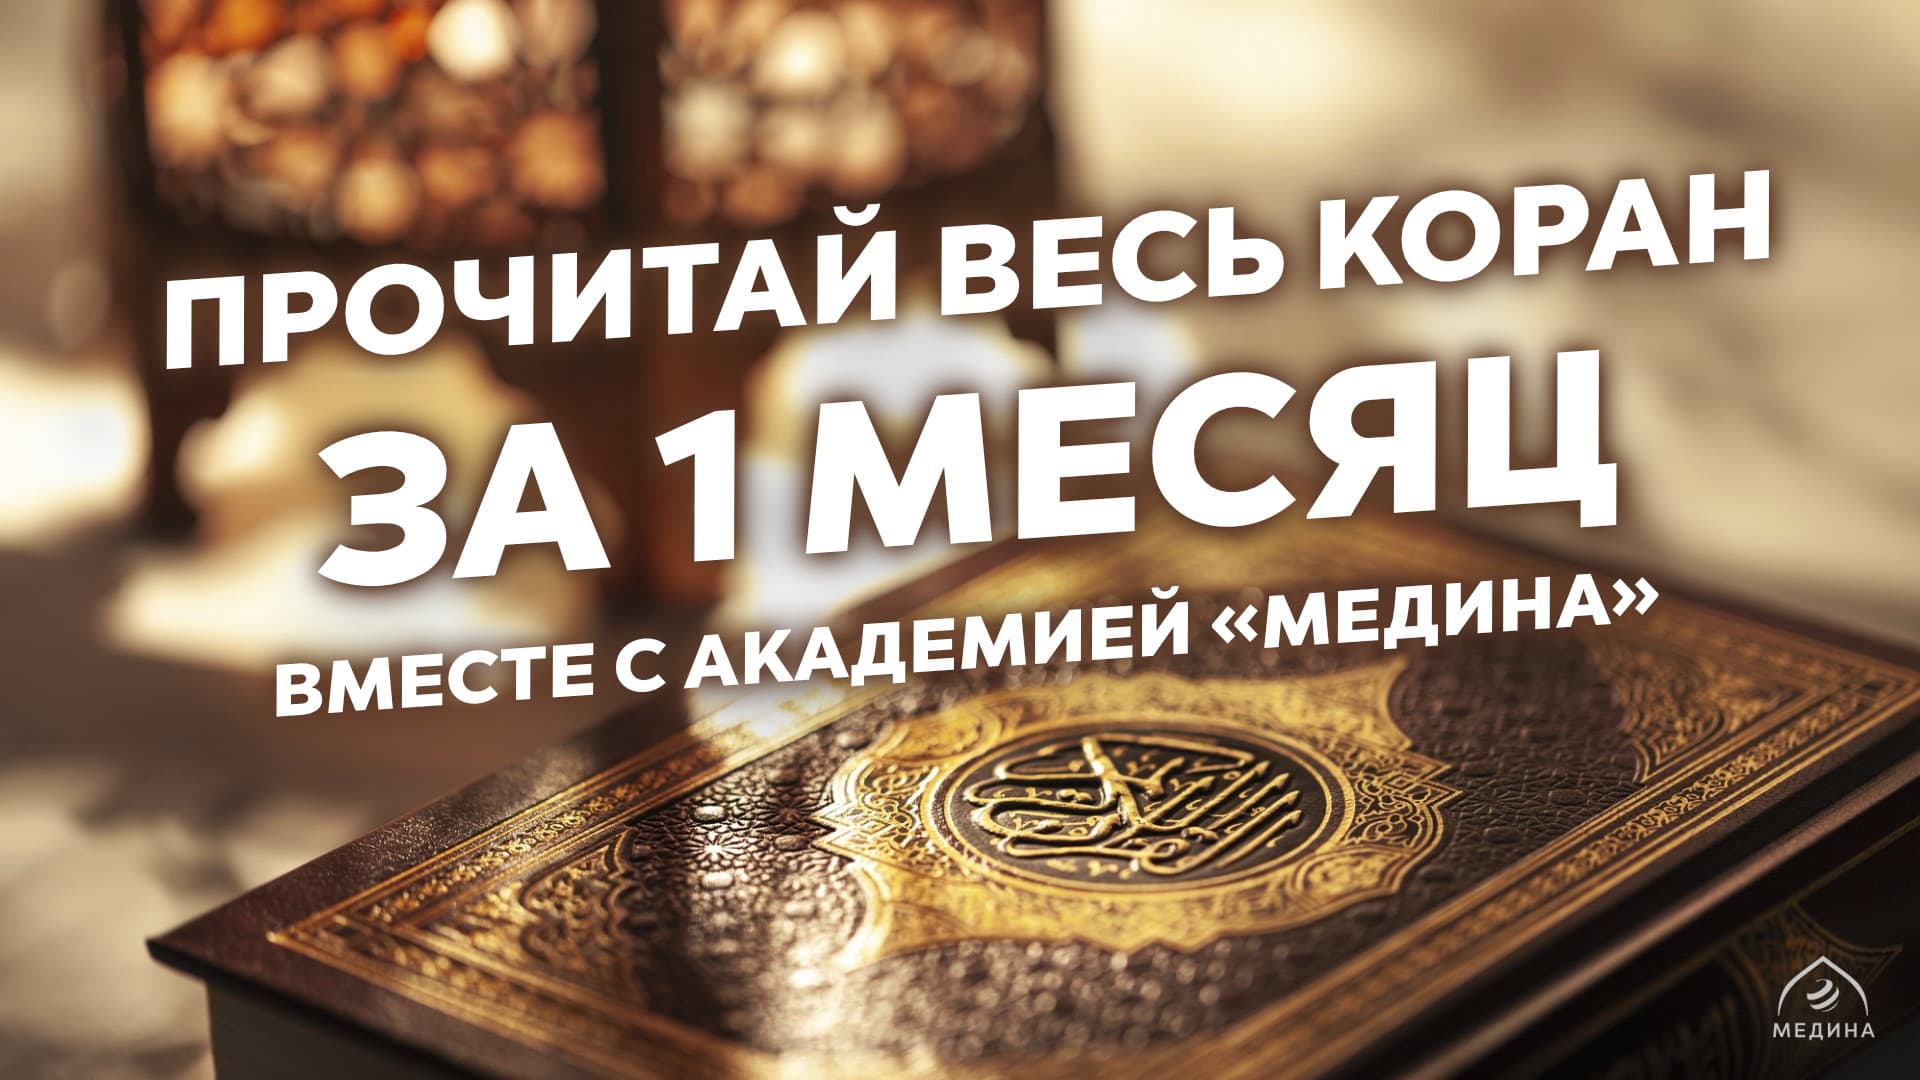 Вы готовы вновь прочитать весь Коран в течение Рамадана?